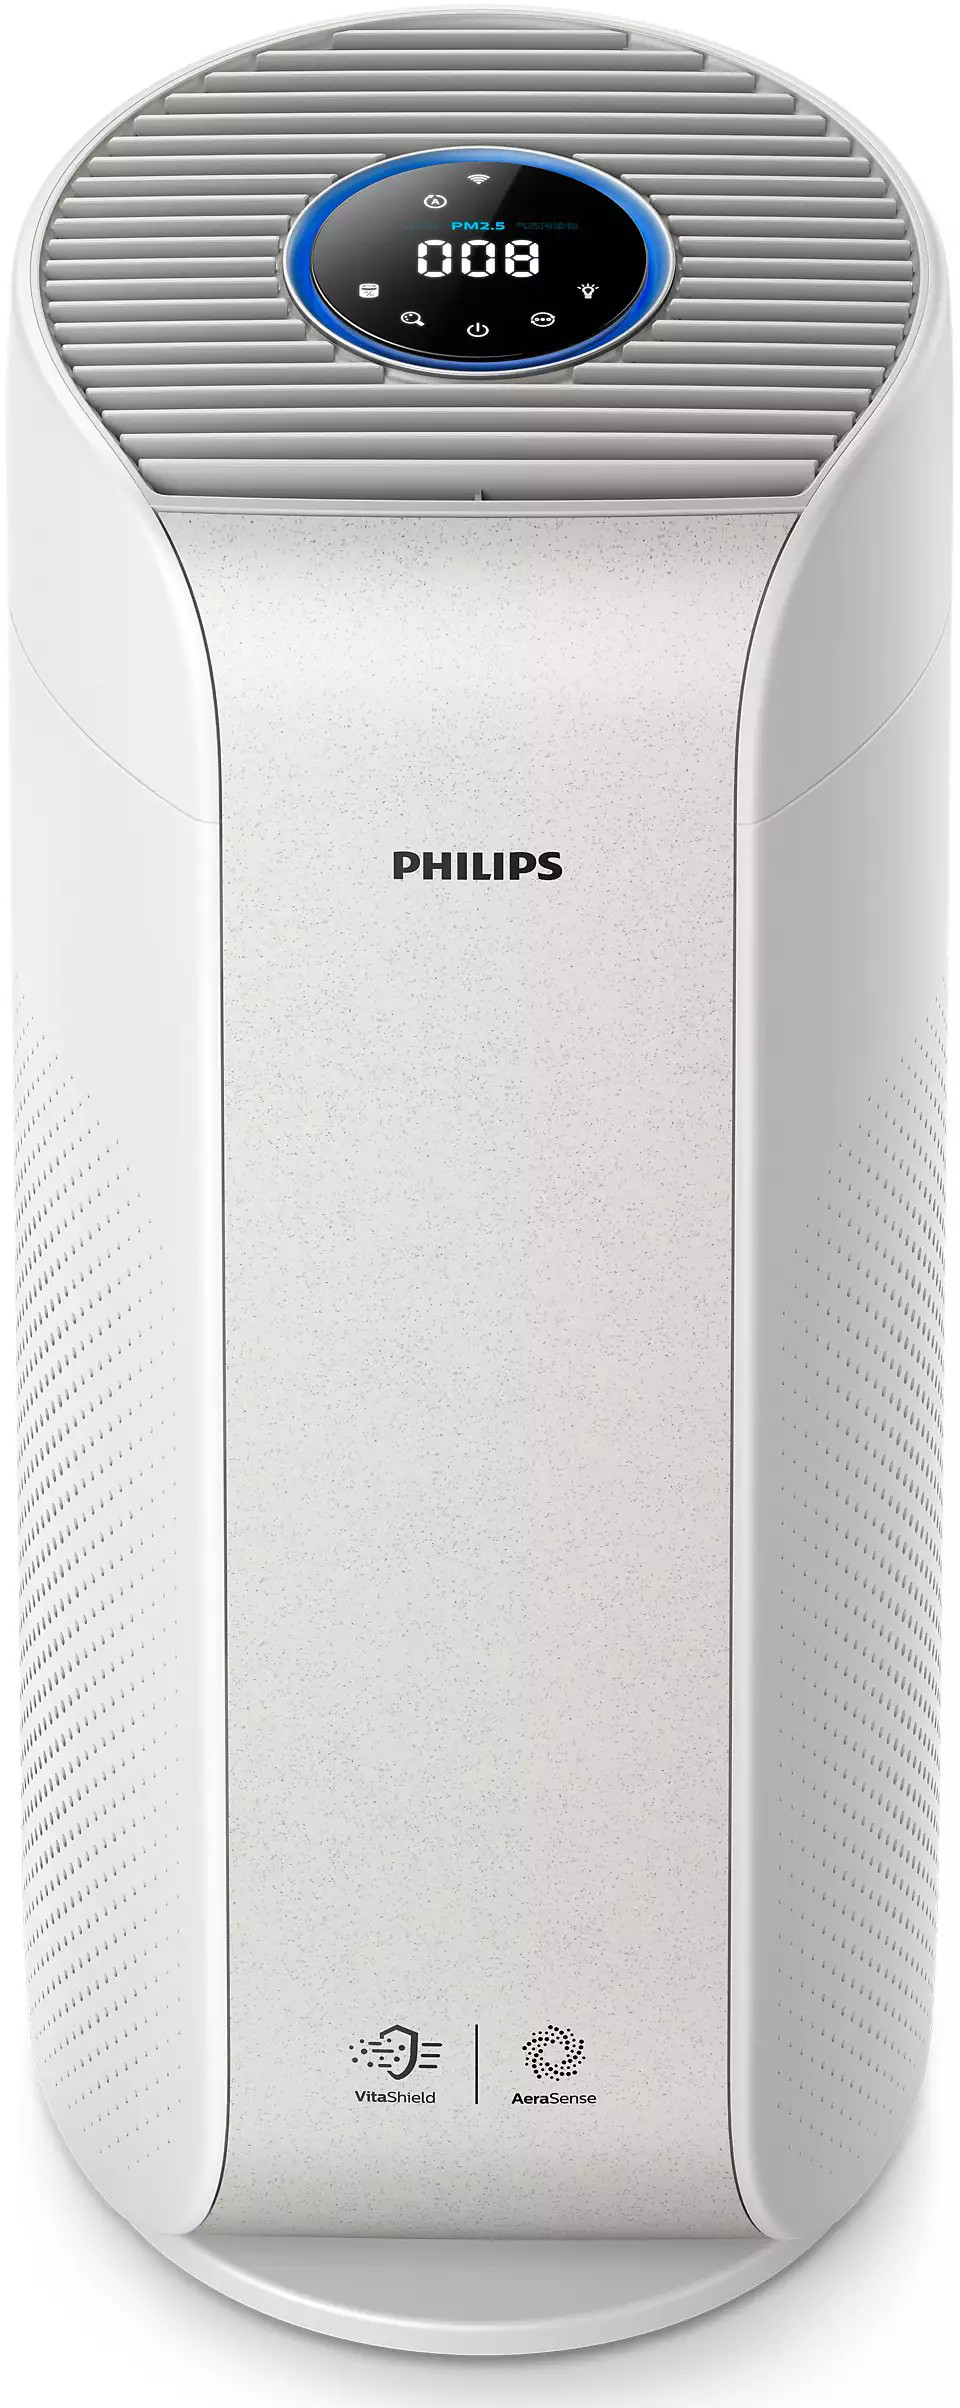 Купить очиститель воздуха Philips AC3055/51 в Киеве